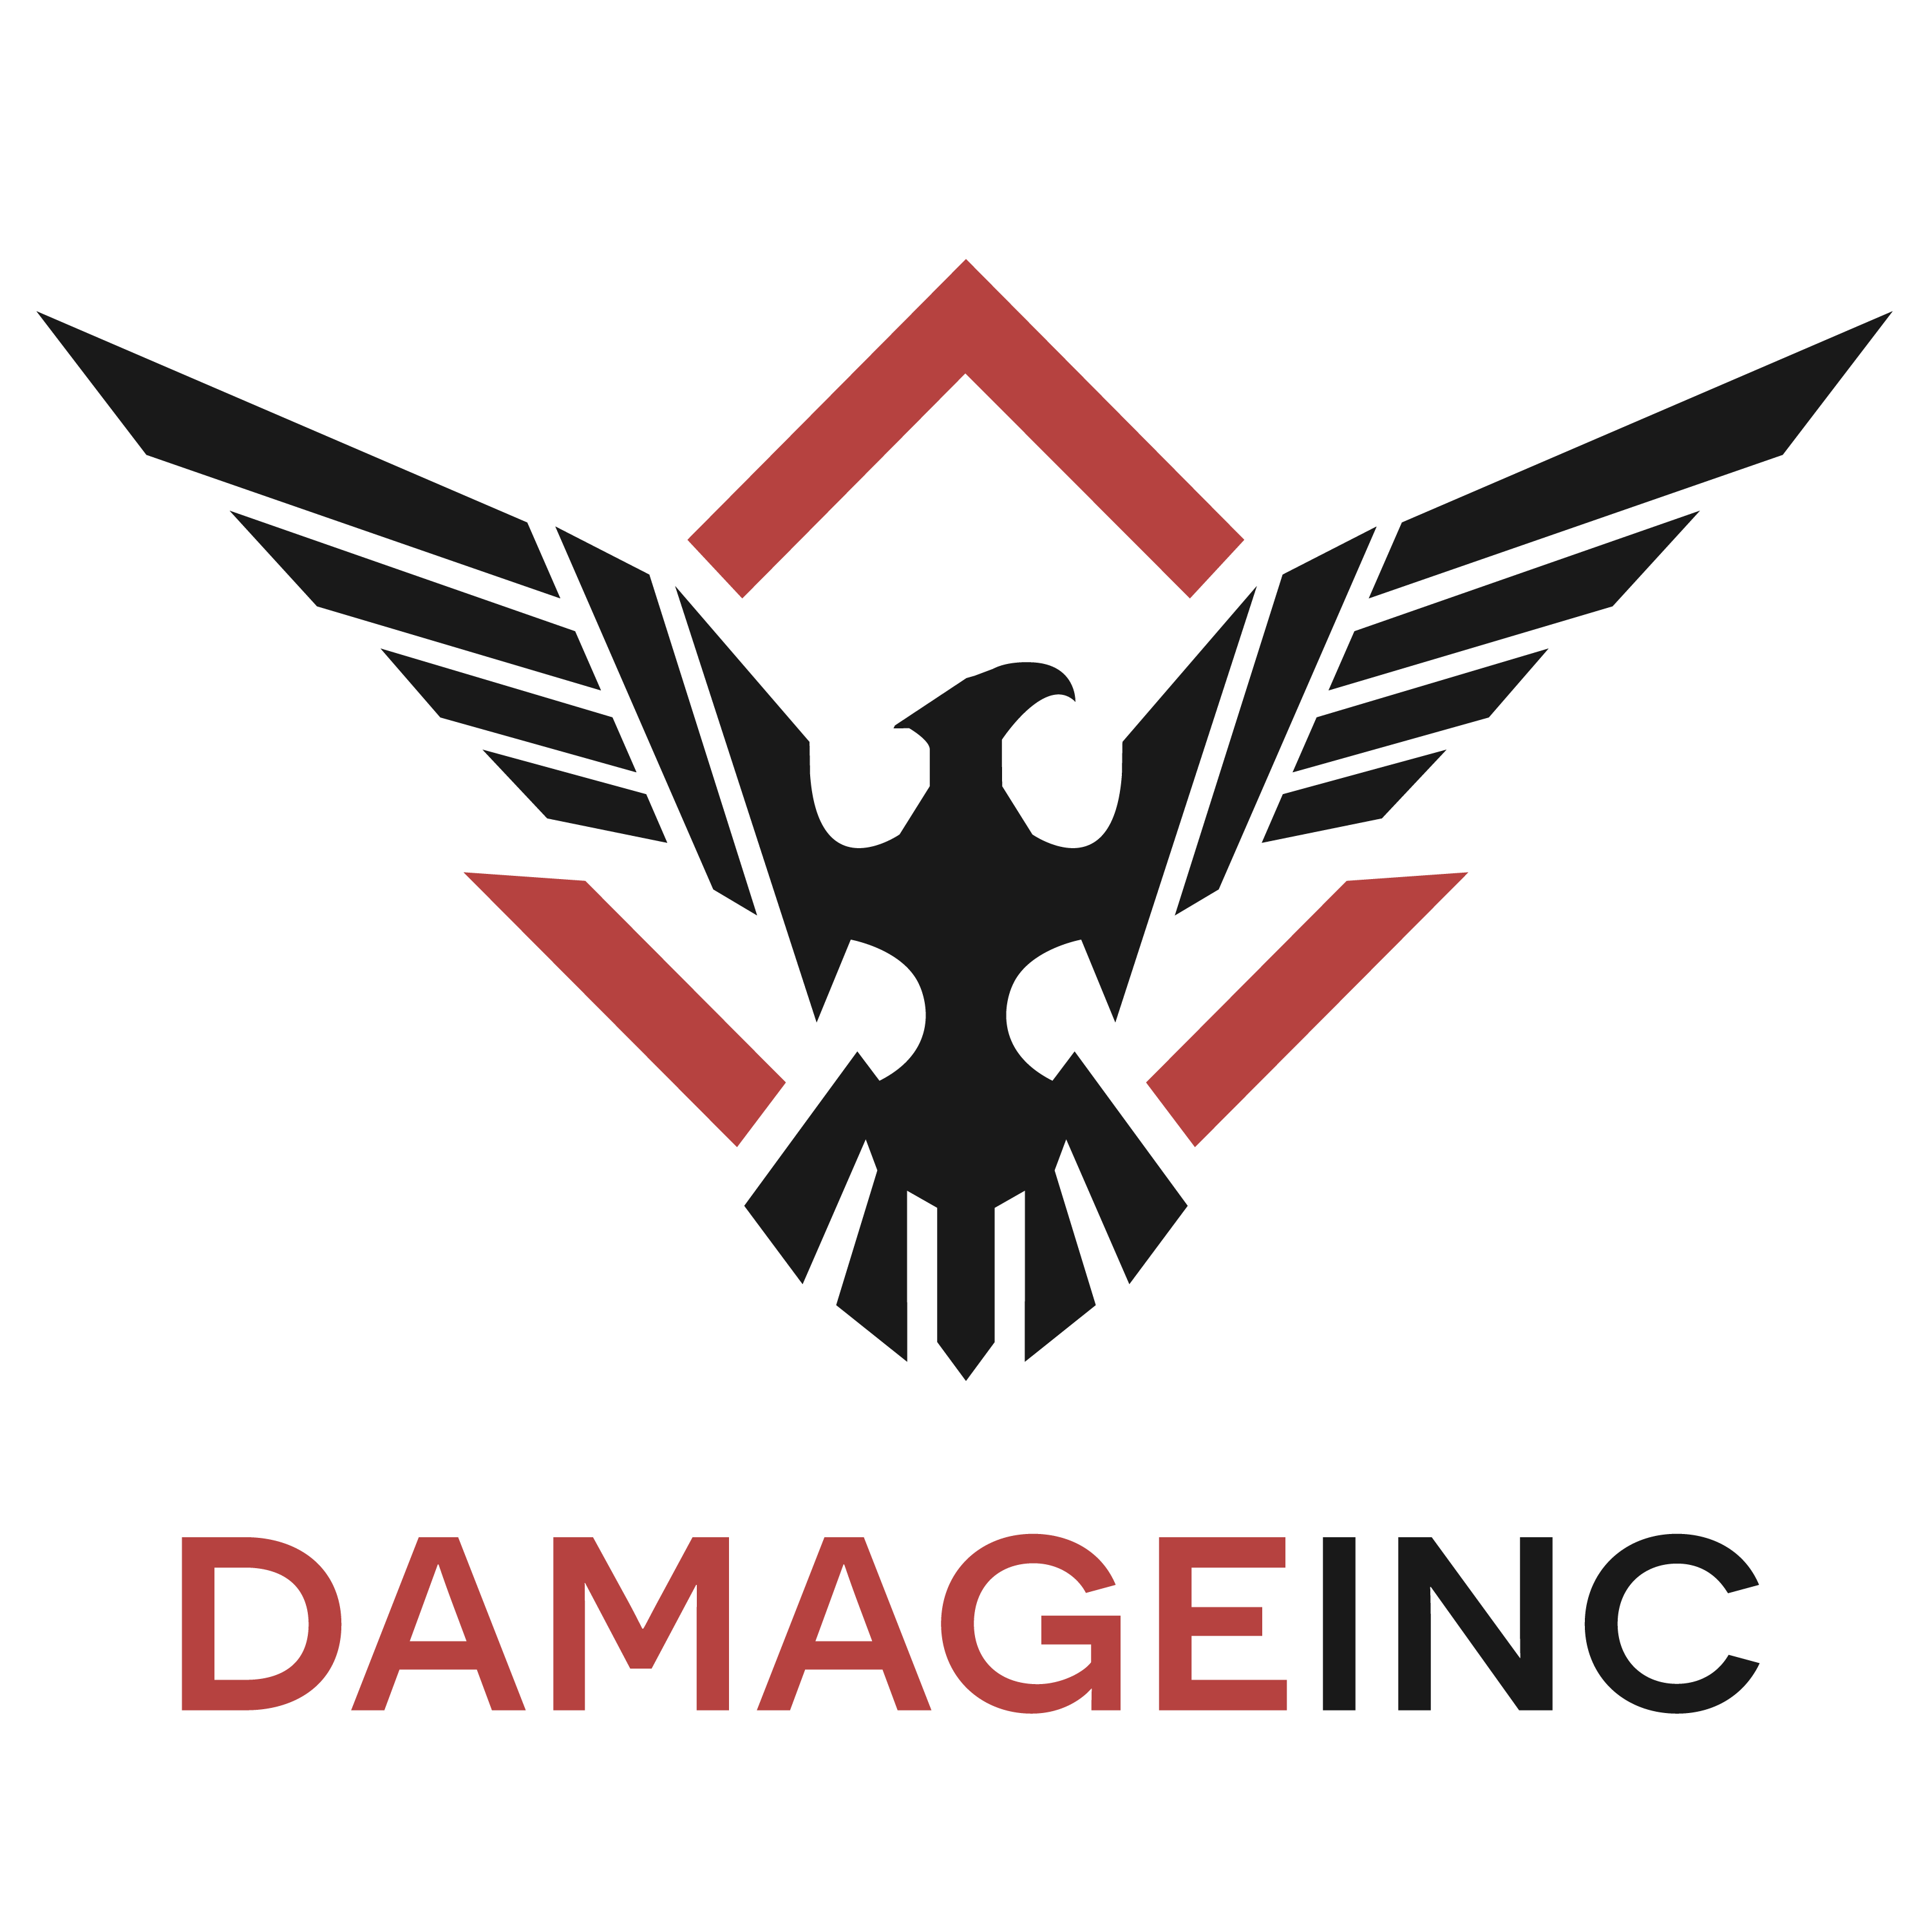 Inc. Logo - About – Damage Inc